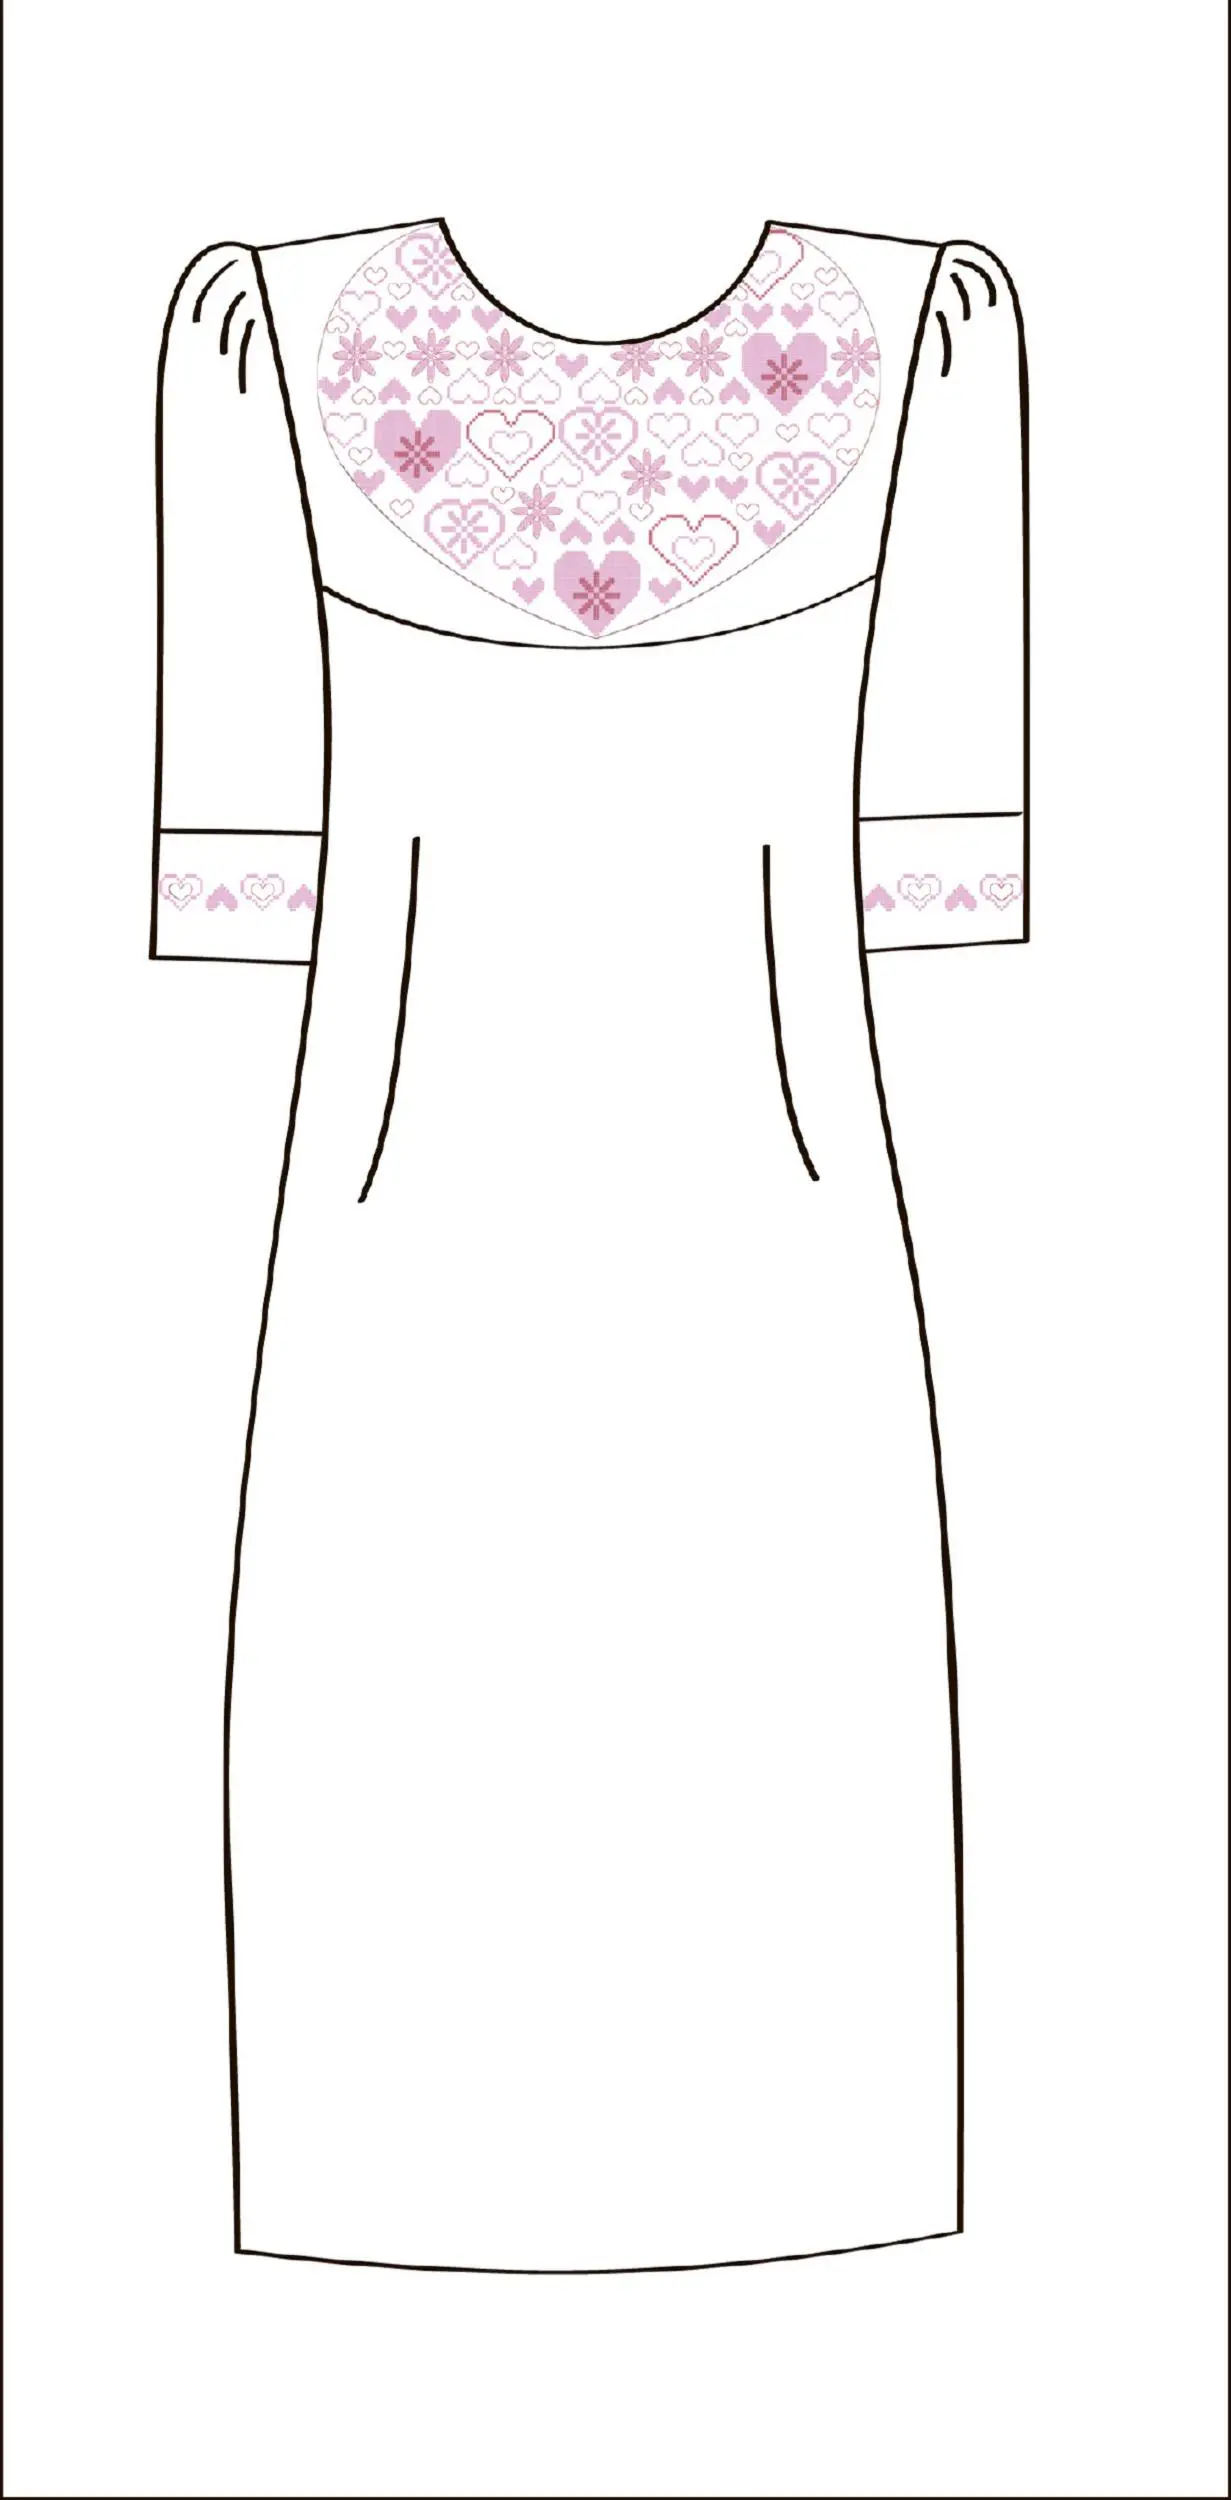 822-14/09 Плаття жіноче, біле, розмір 50